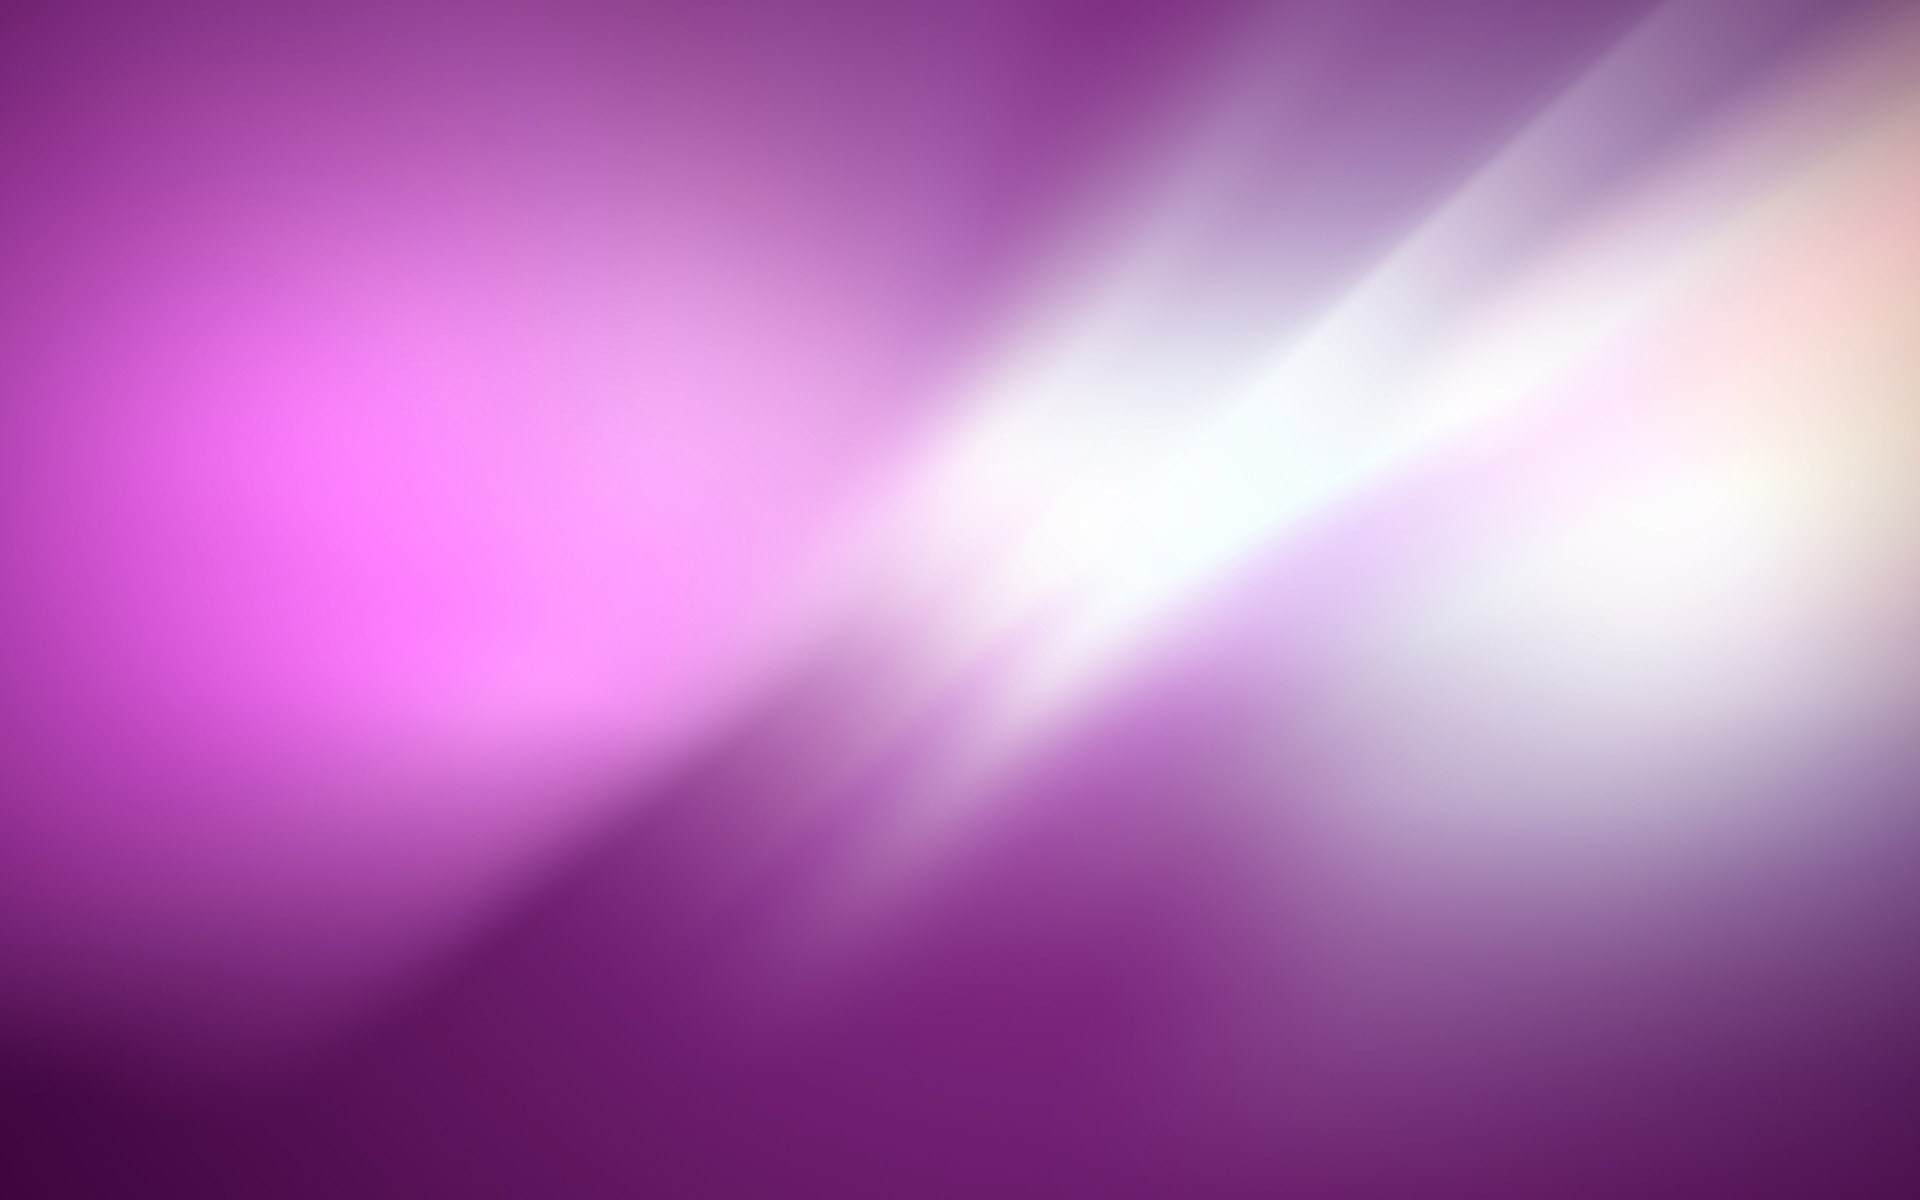 núcleos de papel tapiz,violeta,púrpura,rosado,azul,lila